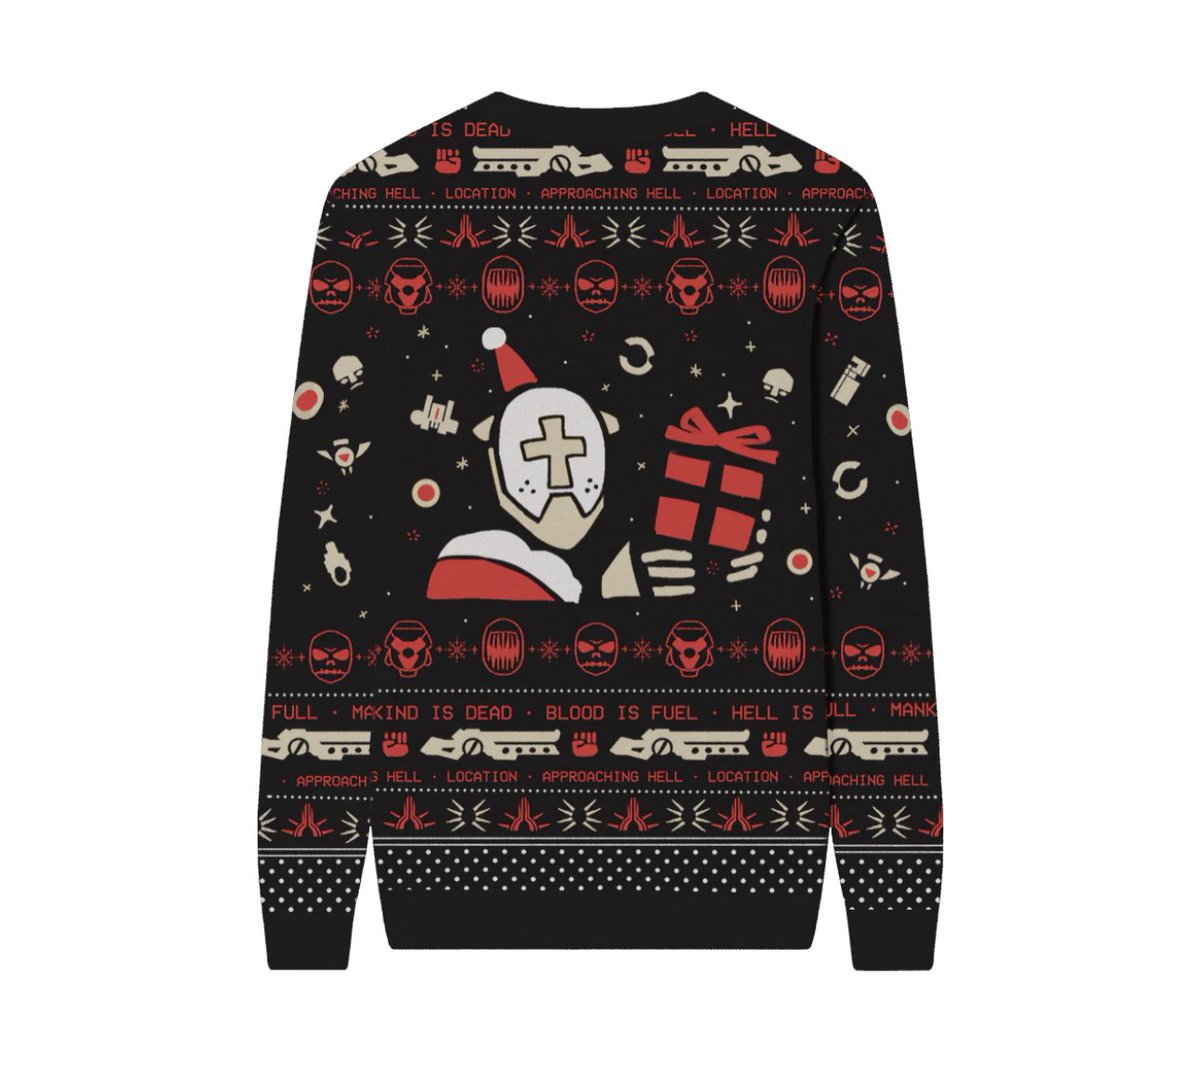 Ugly gabv1el holiday sweater im cryin